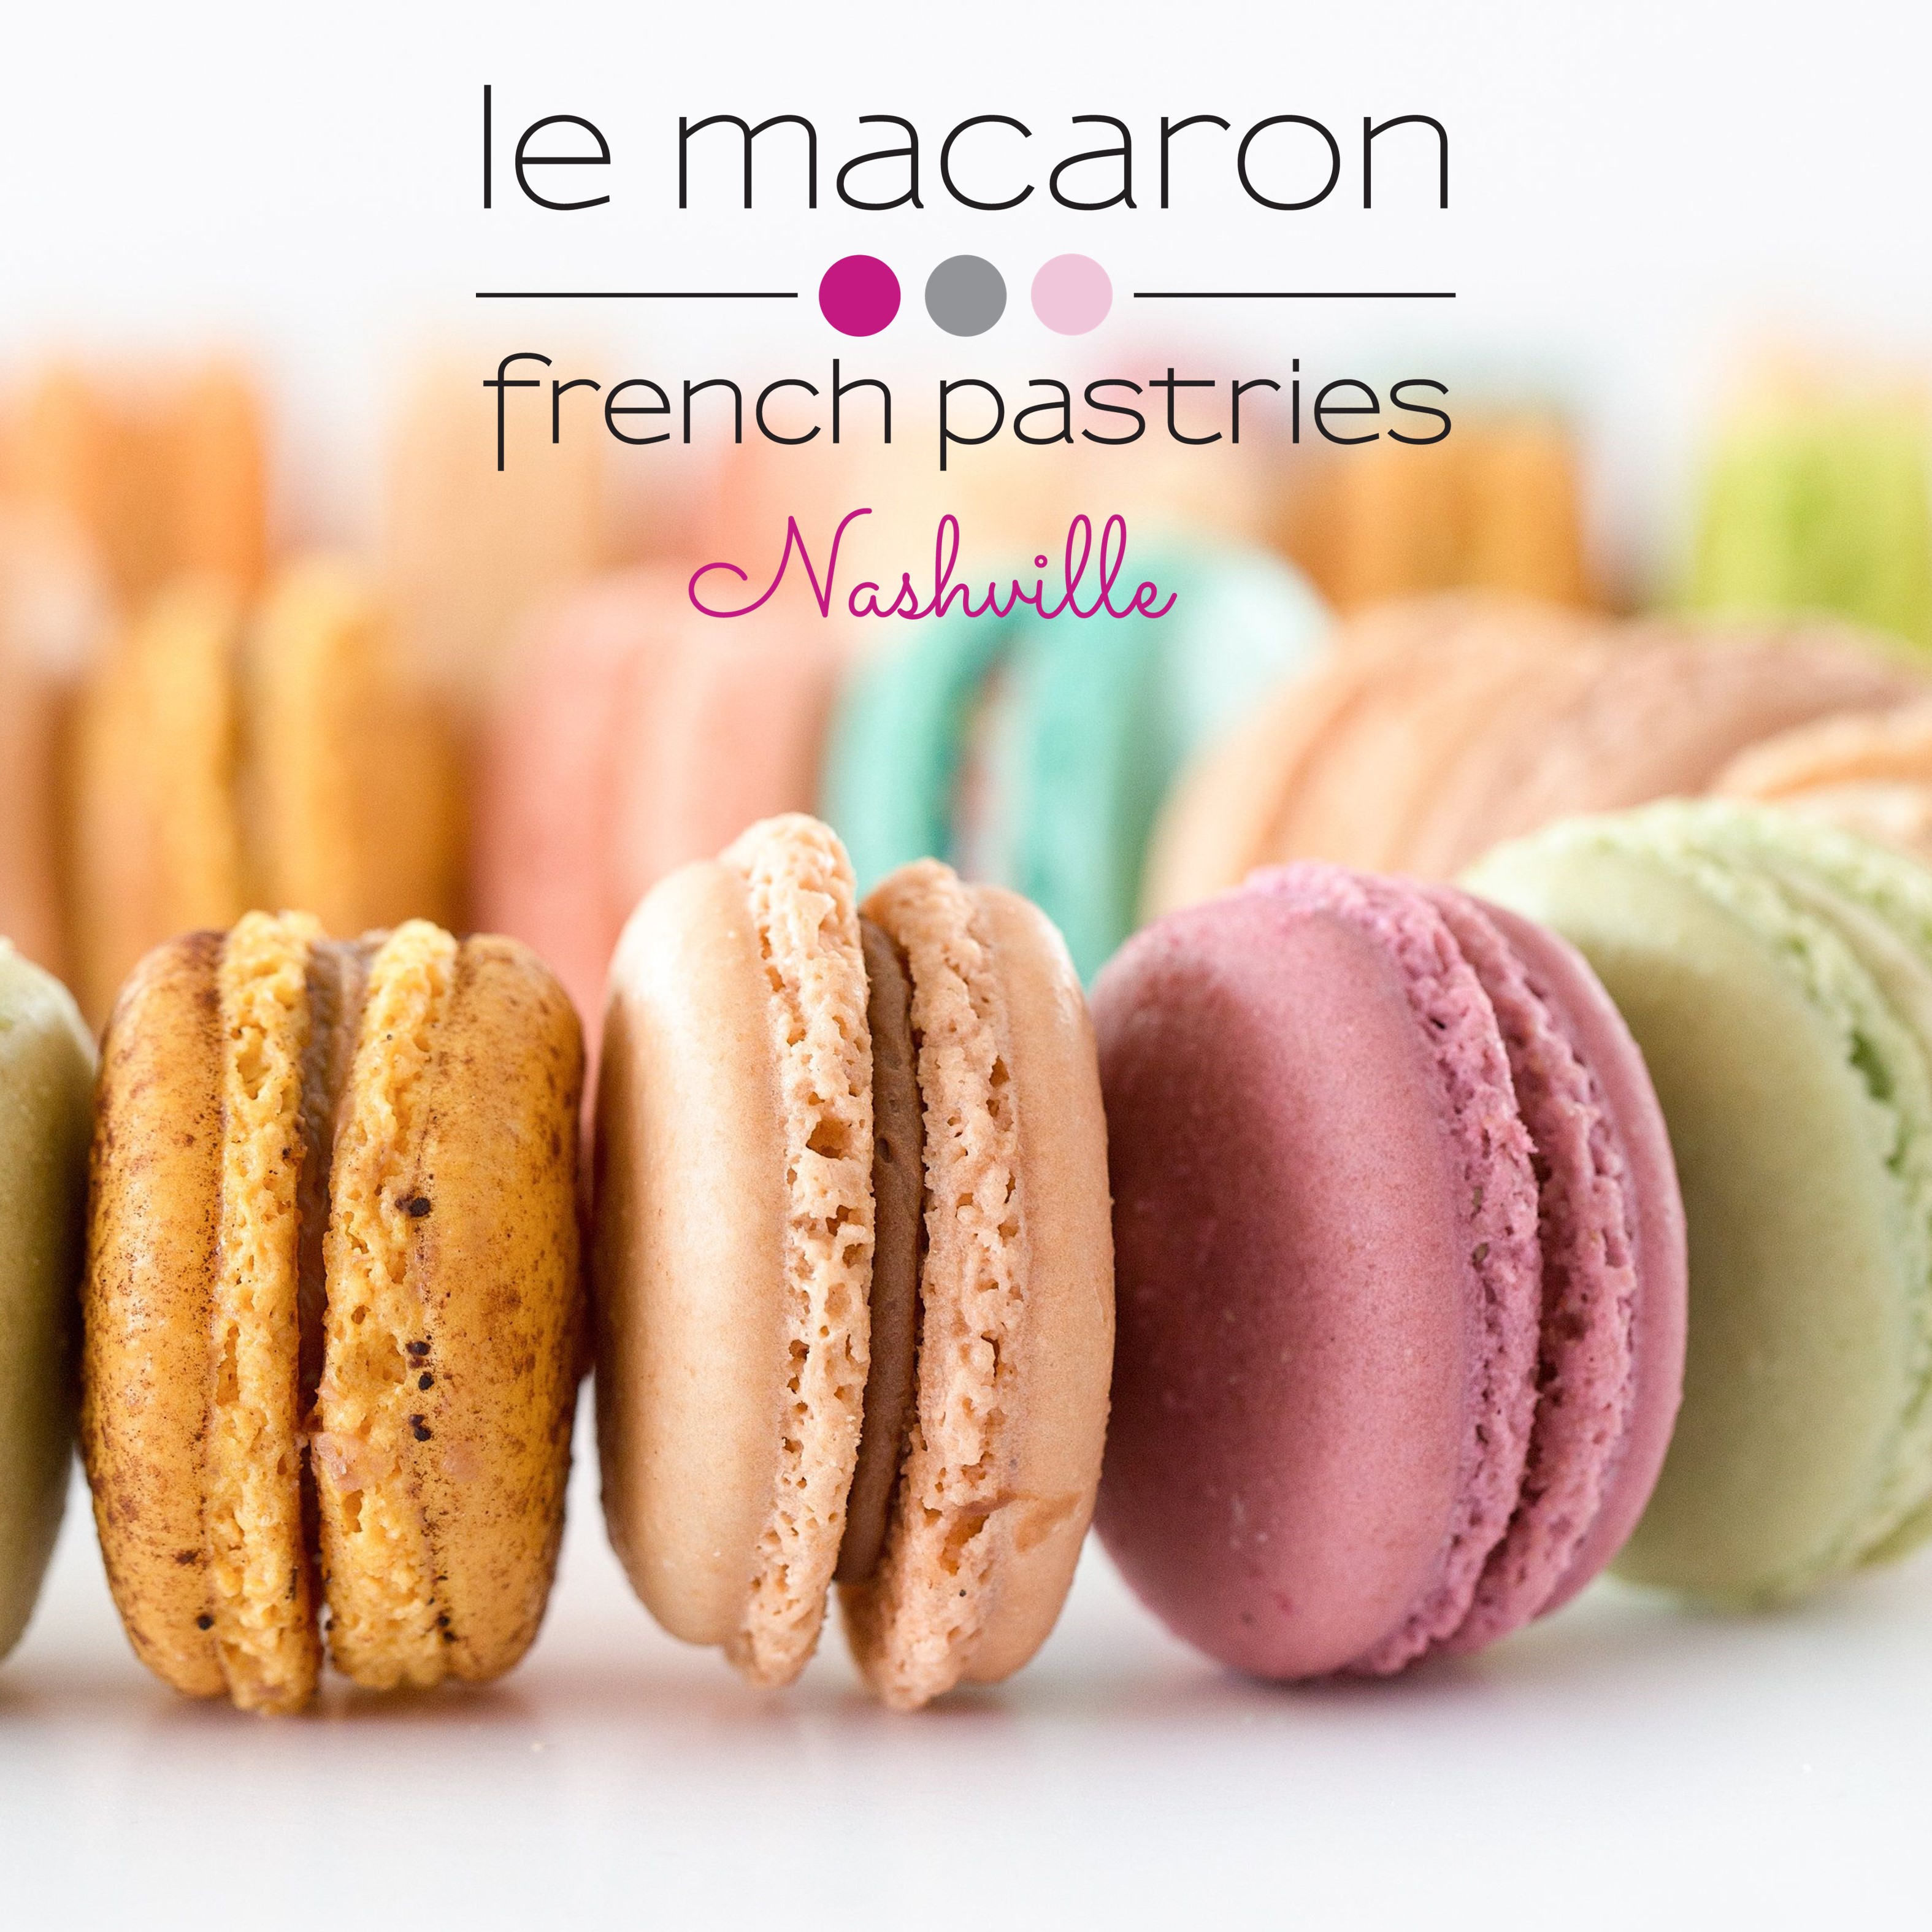 Le Macaron French Pastries Logo